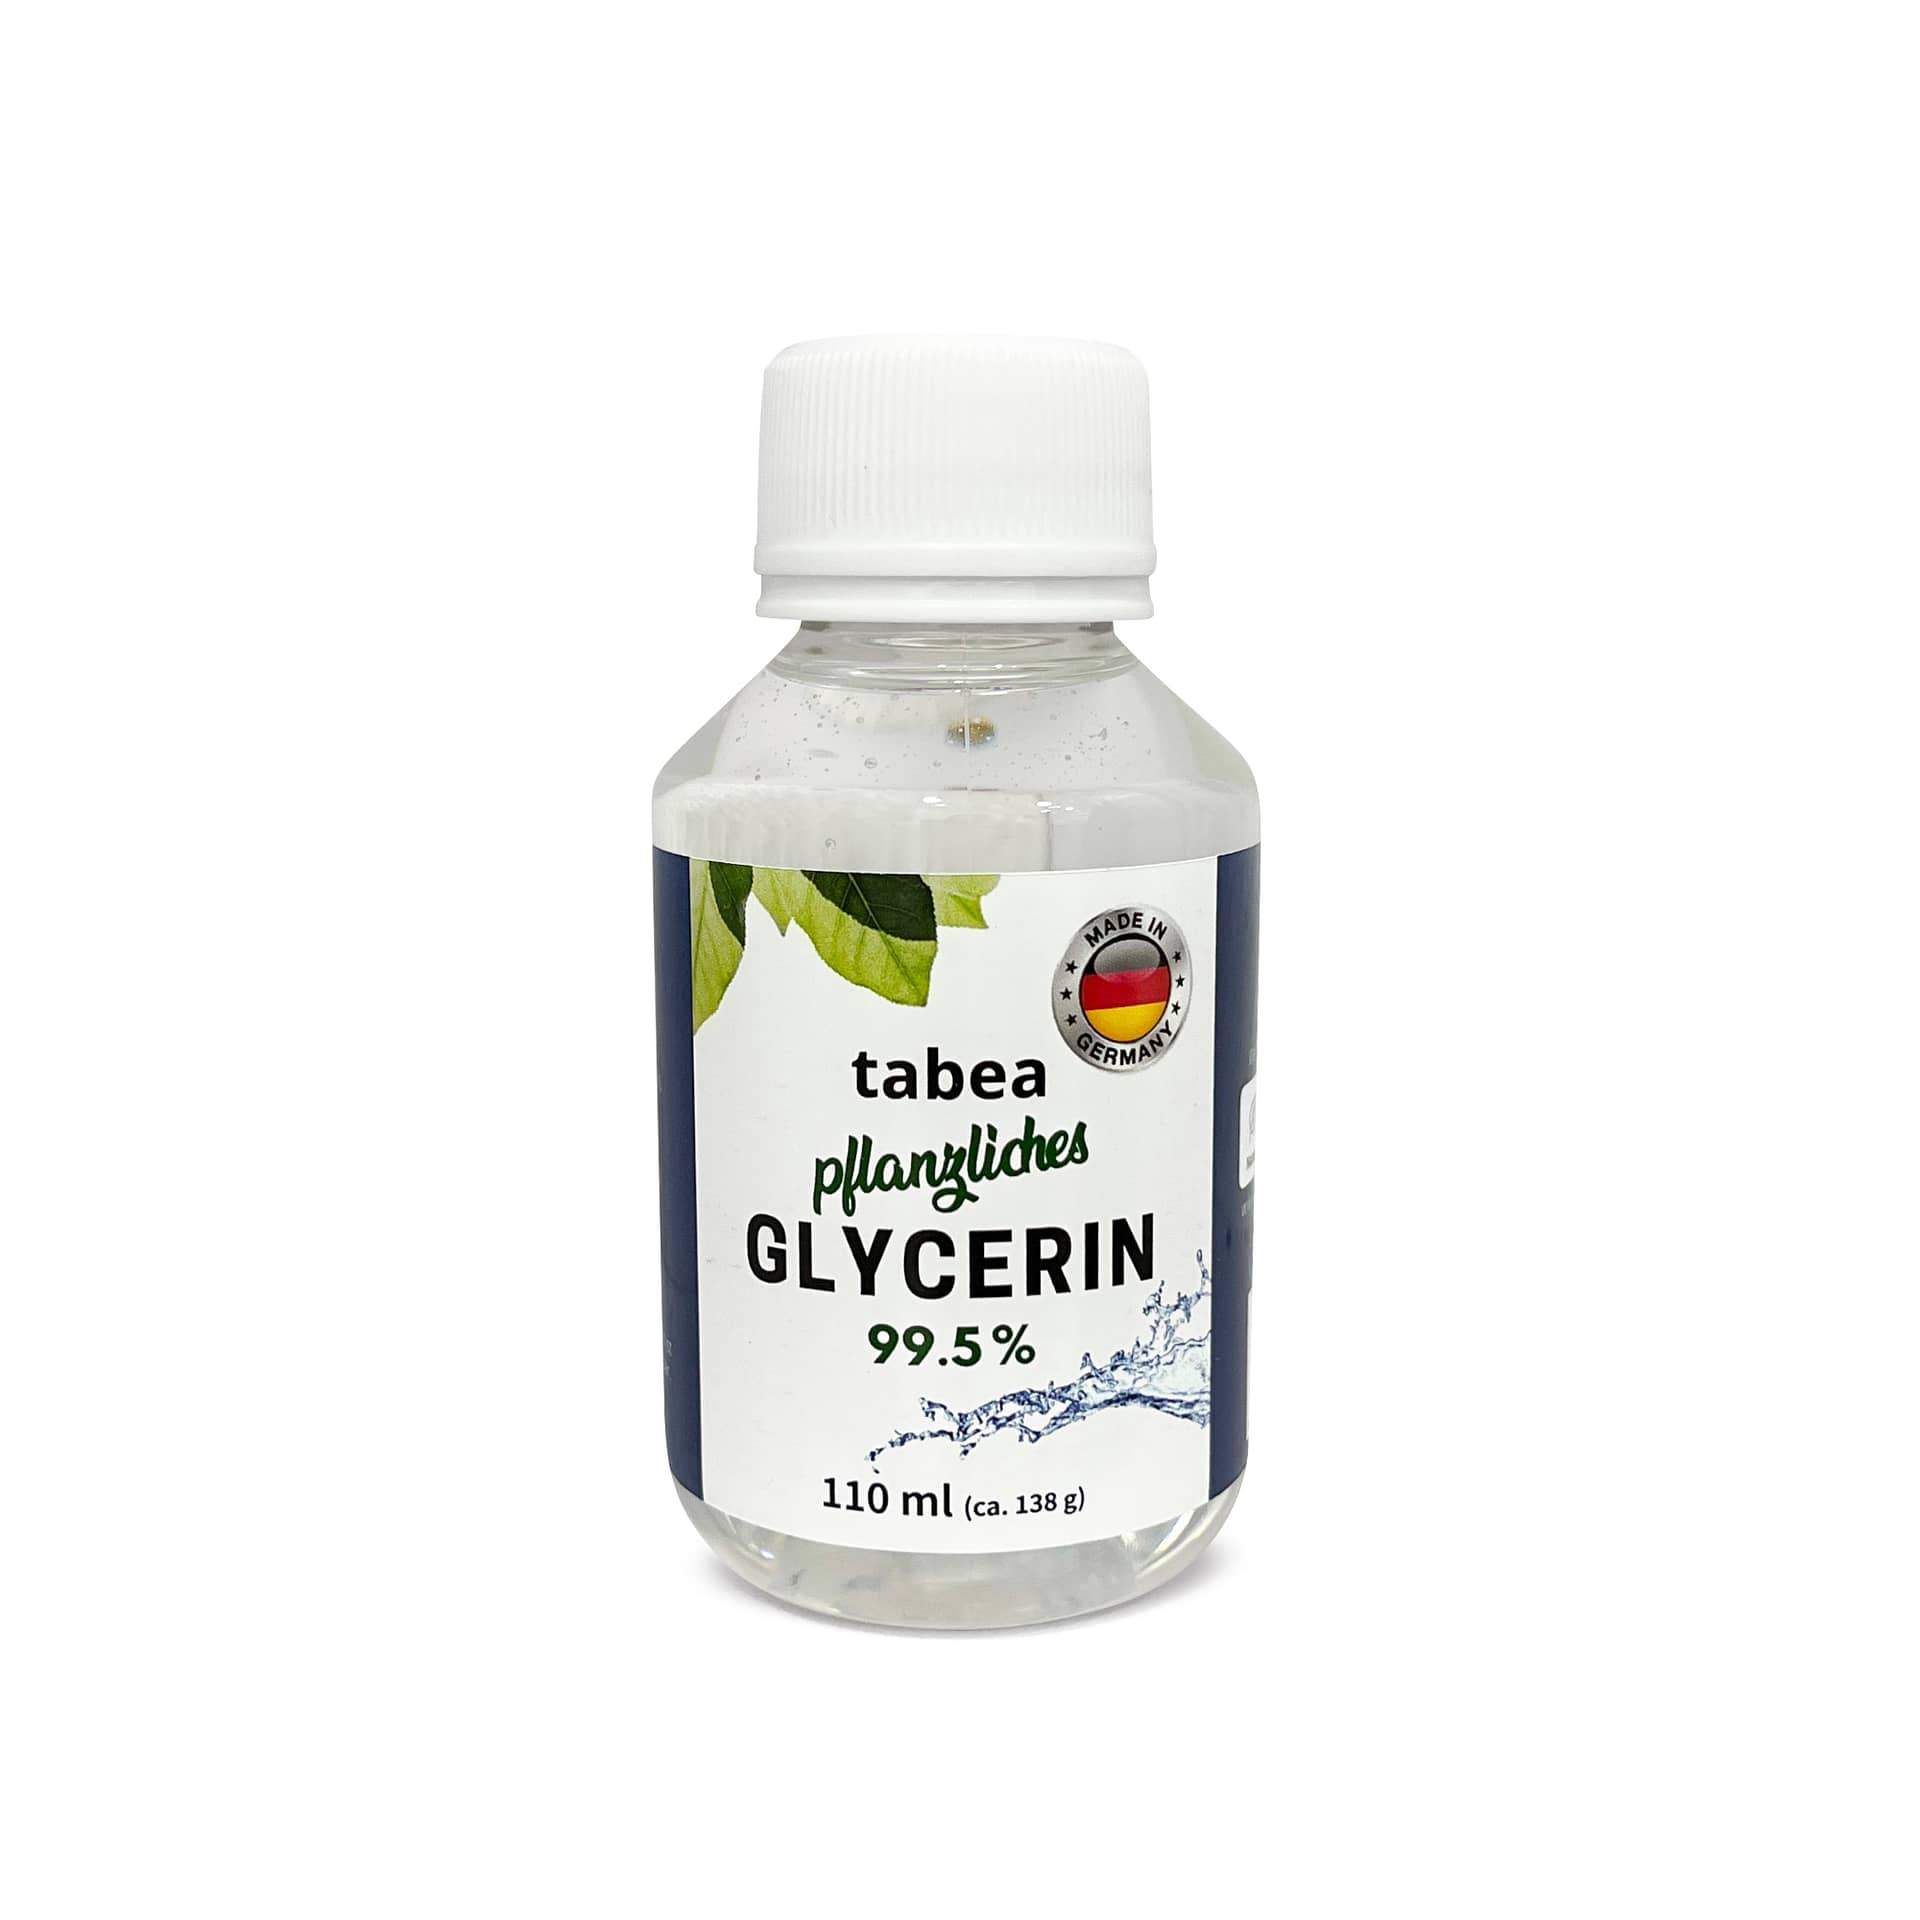 Tabea Glycerin 99,5% 100ml – 110ml – Made in Germany – (ca. 135g) Lebensmittelzusatzstoff (E422)